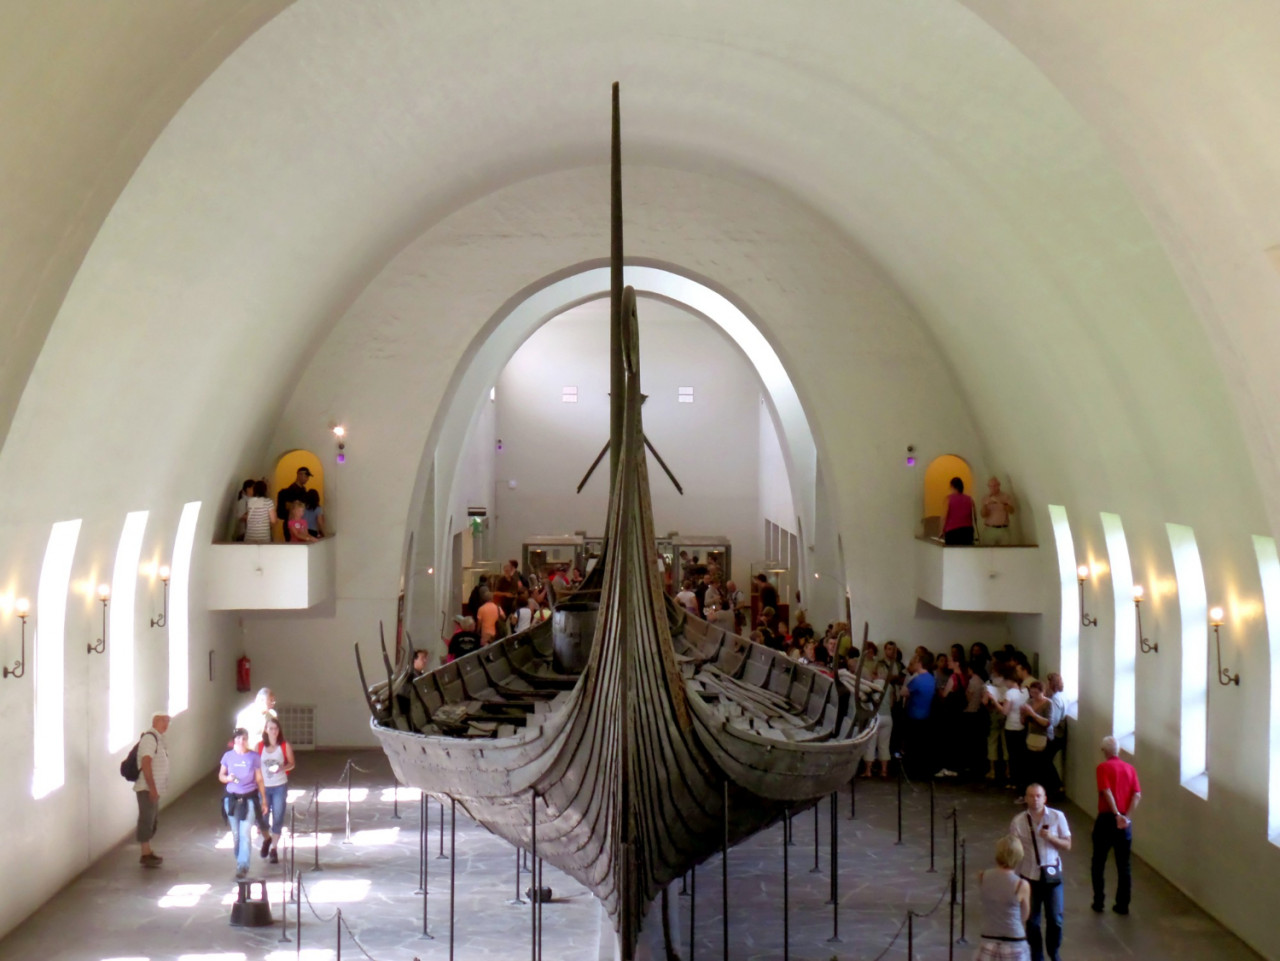 oseberg ship large vessel from viking era exhibited viking ship museum oslo norway